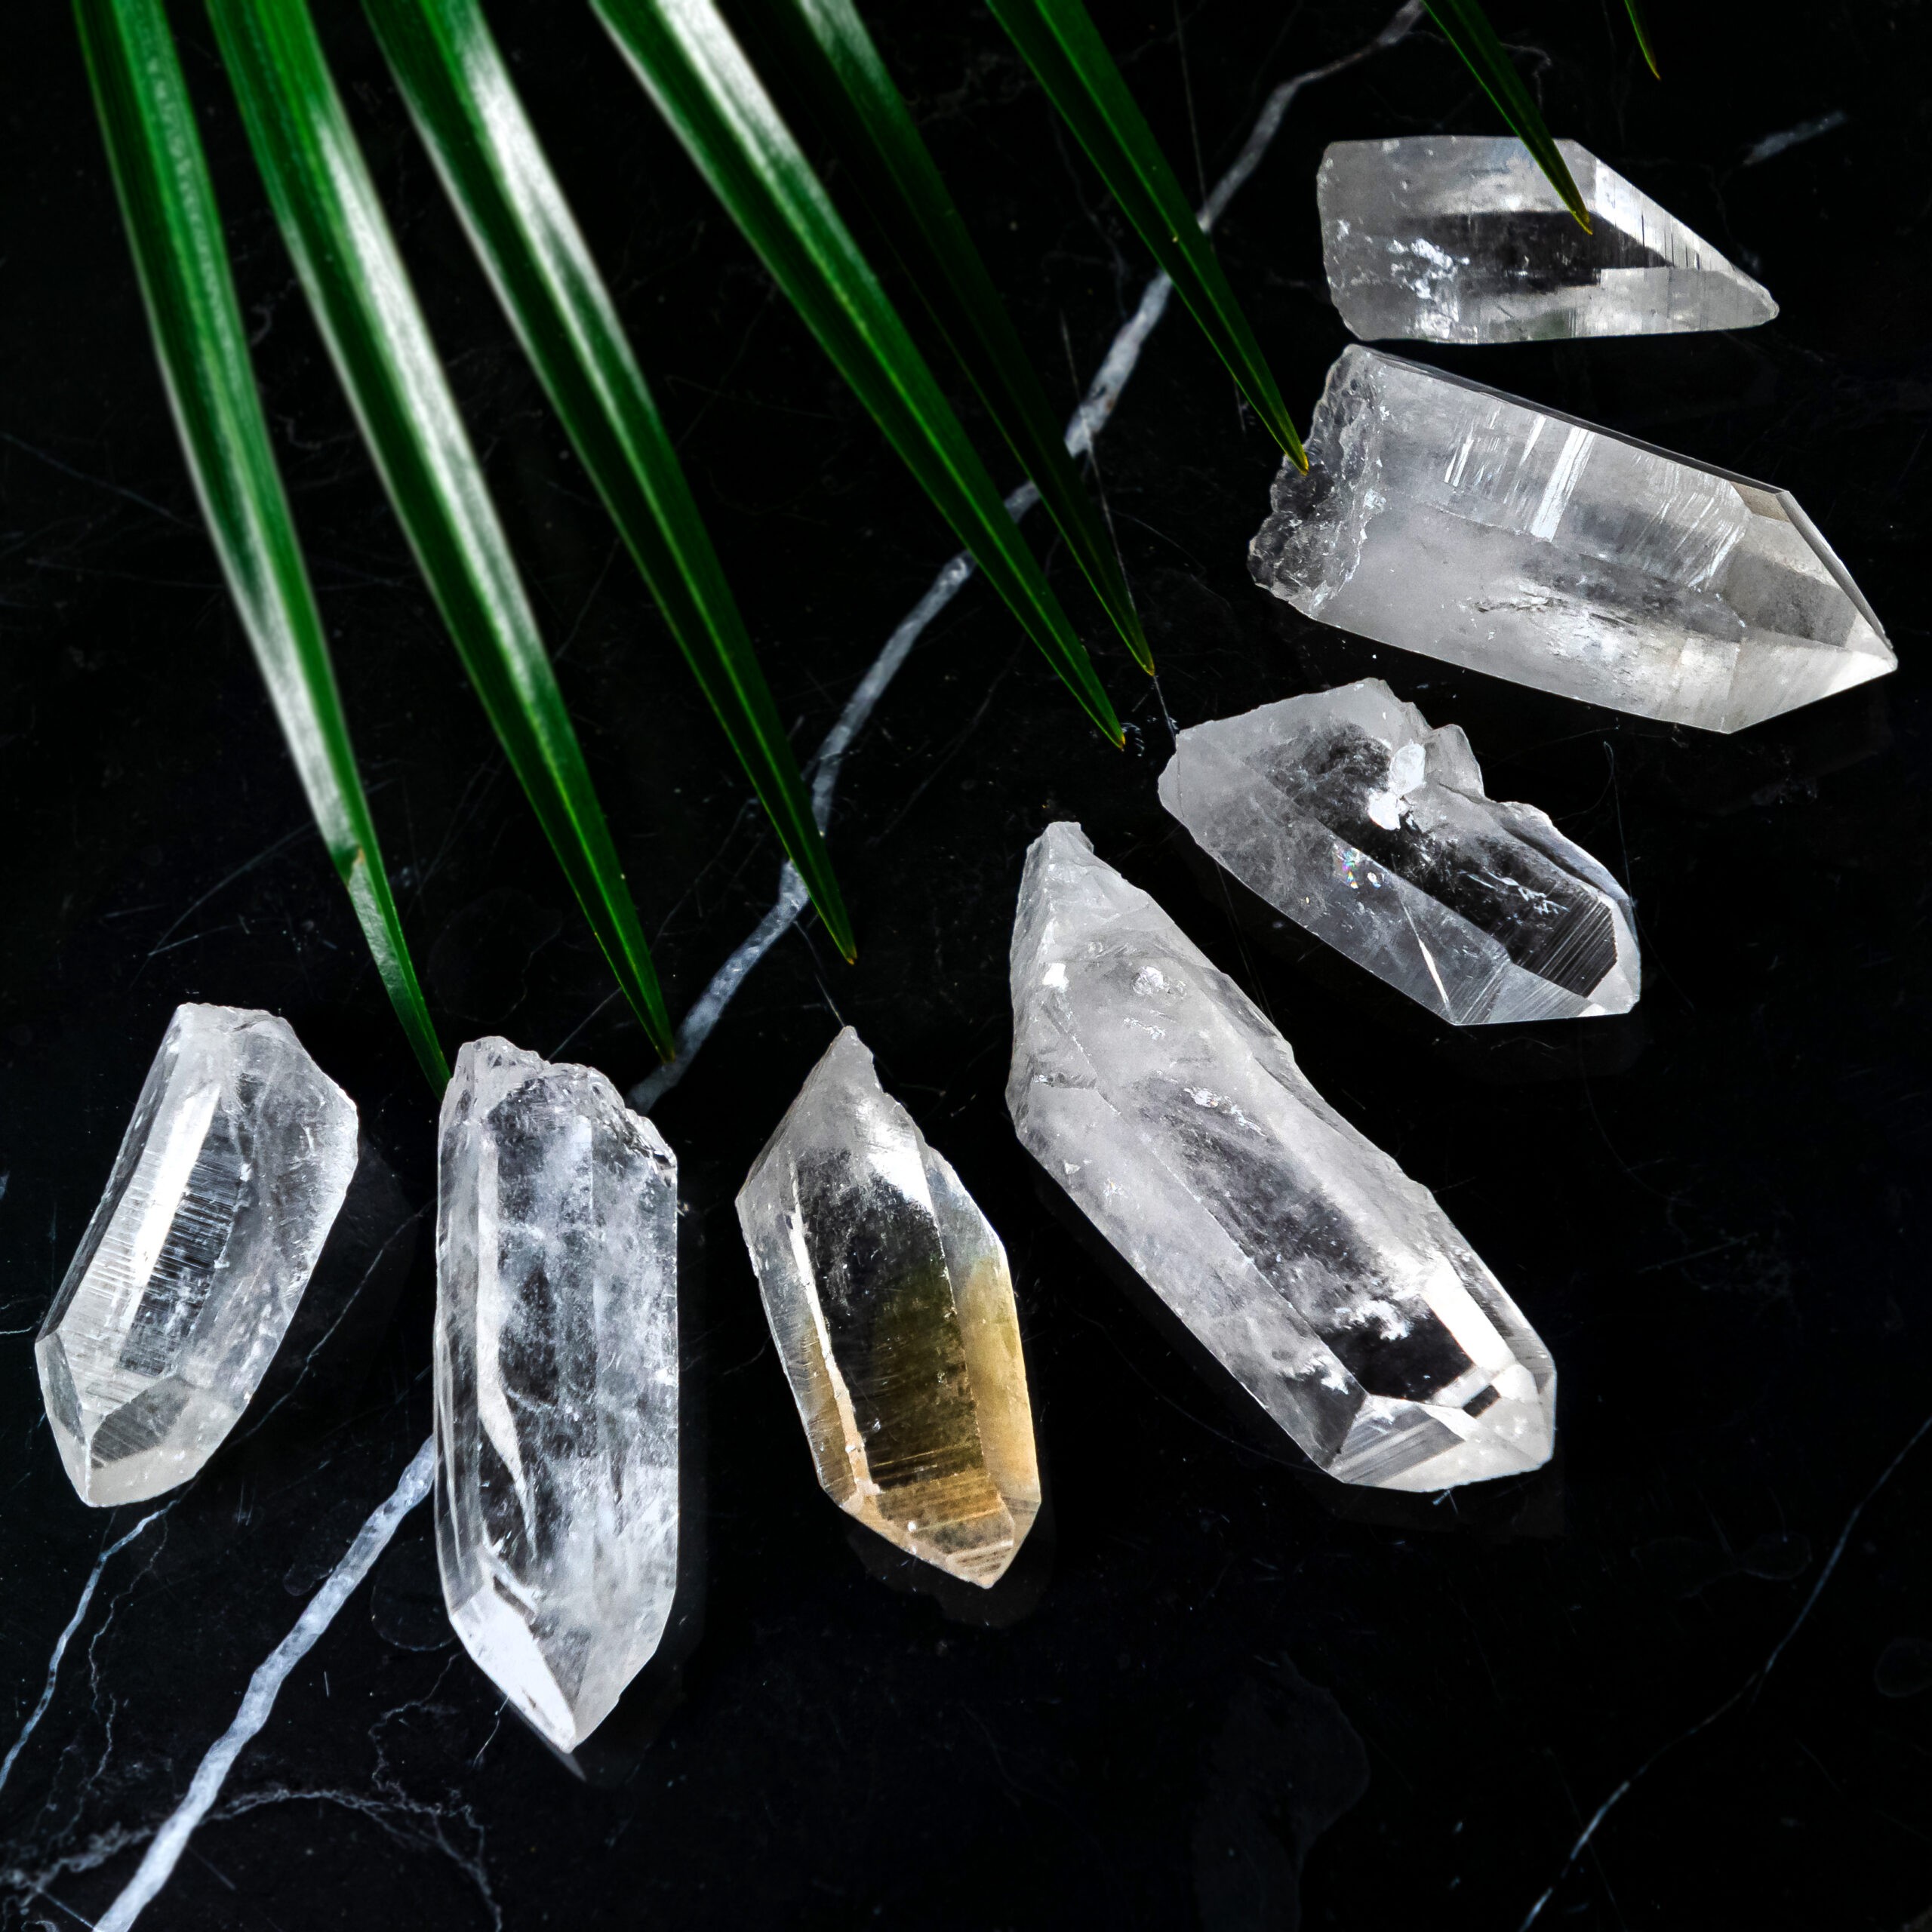 Spirit Jewel  Magical Healing Crystals & Spiritual Jewellery Shop UK